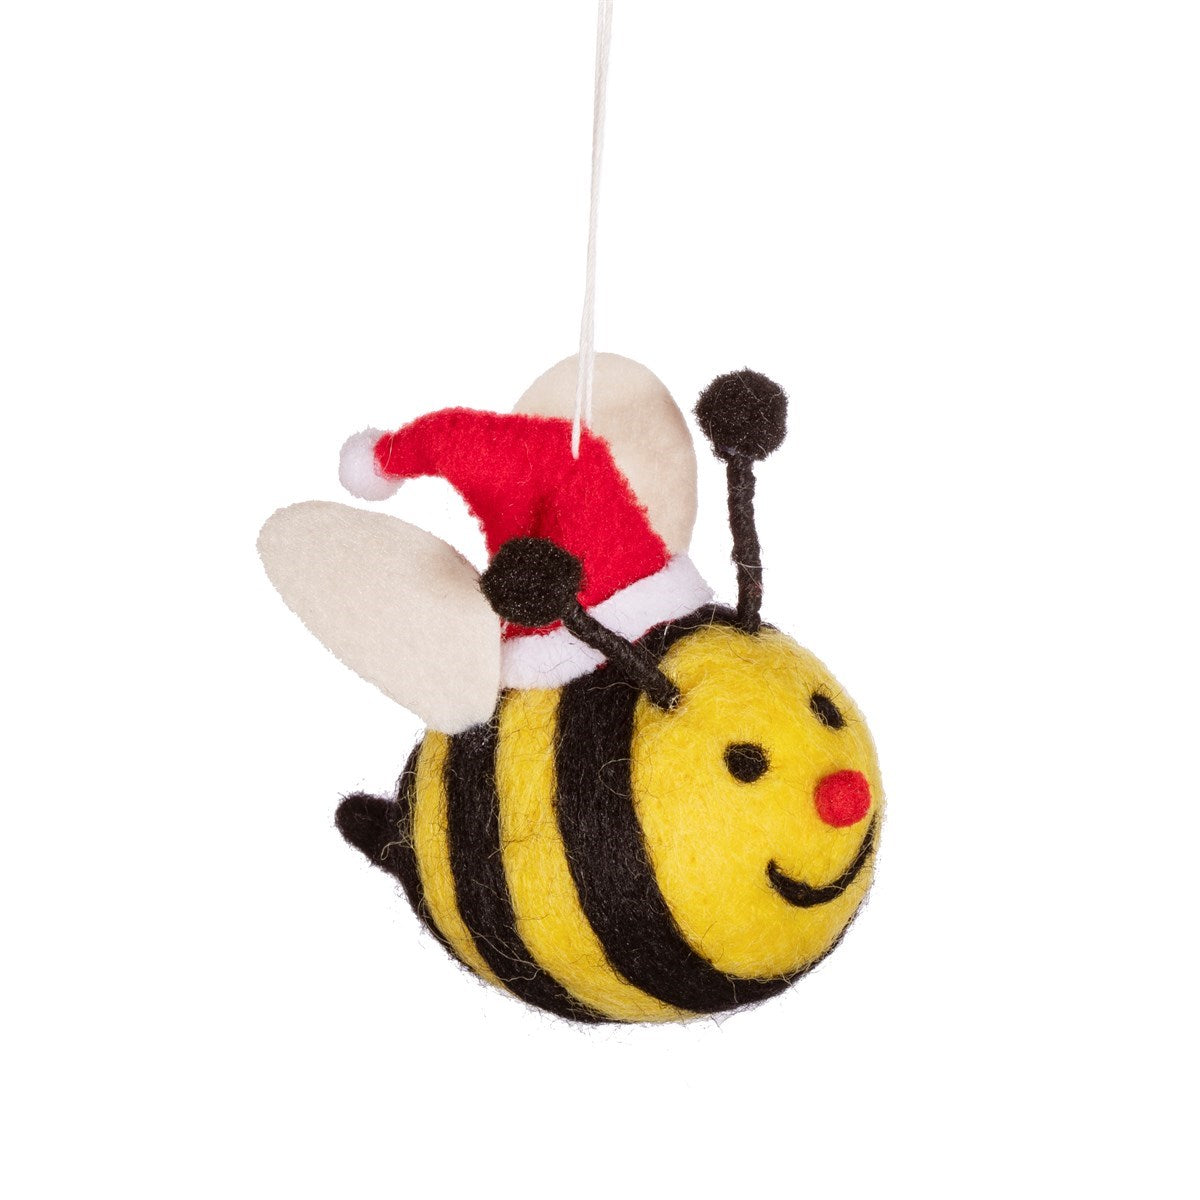 Merry Bee Felt Handmade Decoration | The Manchester Shop